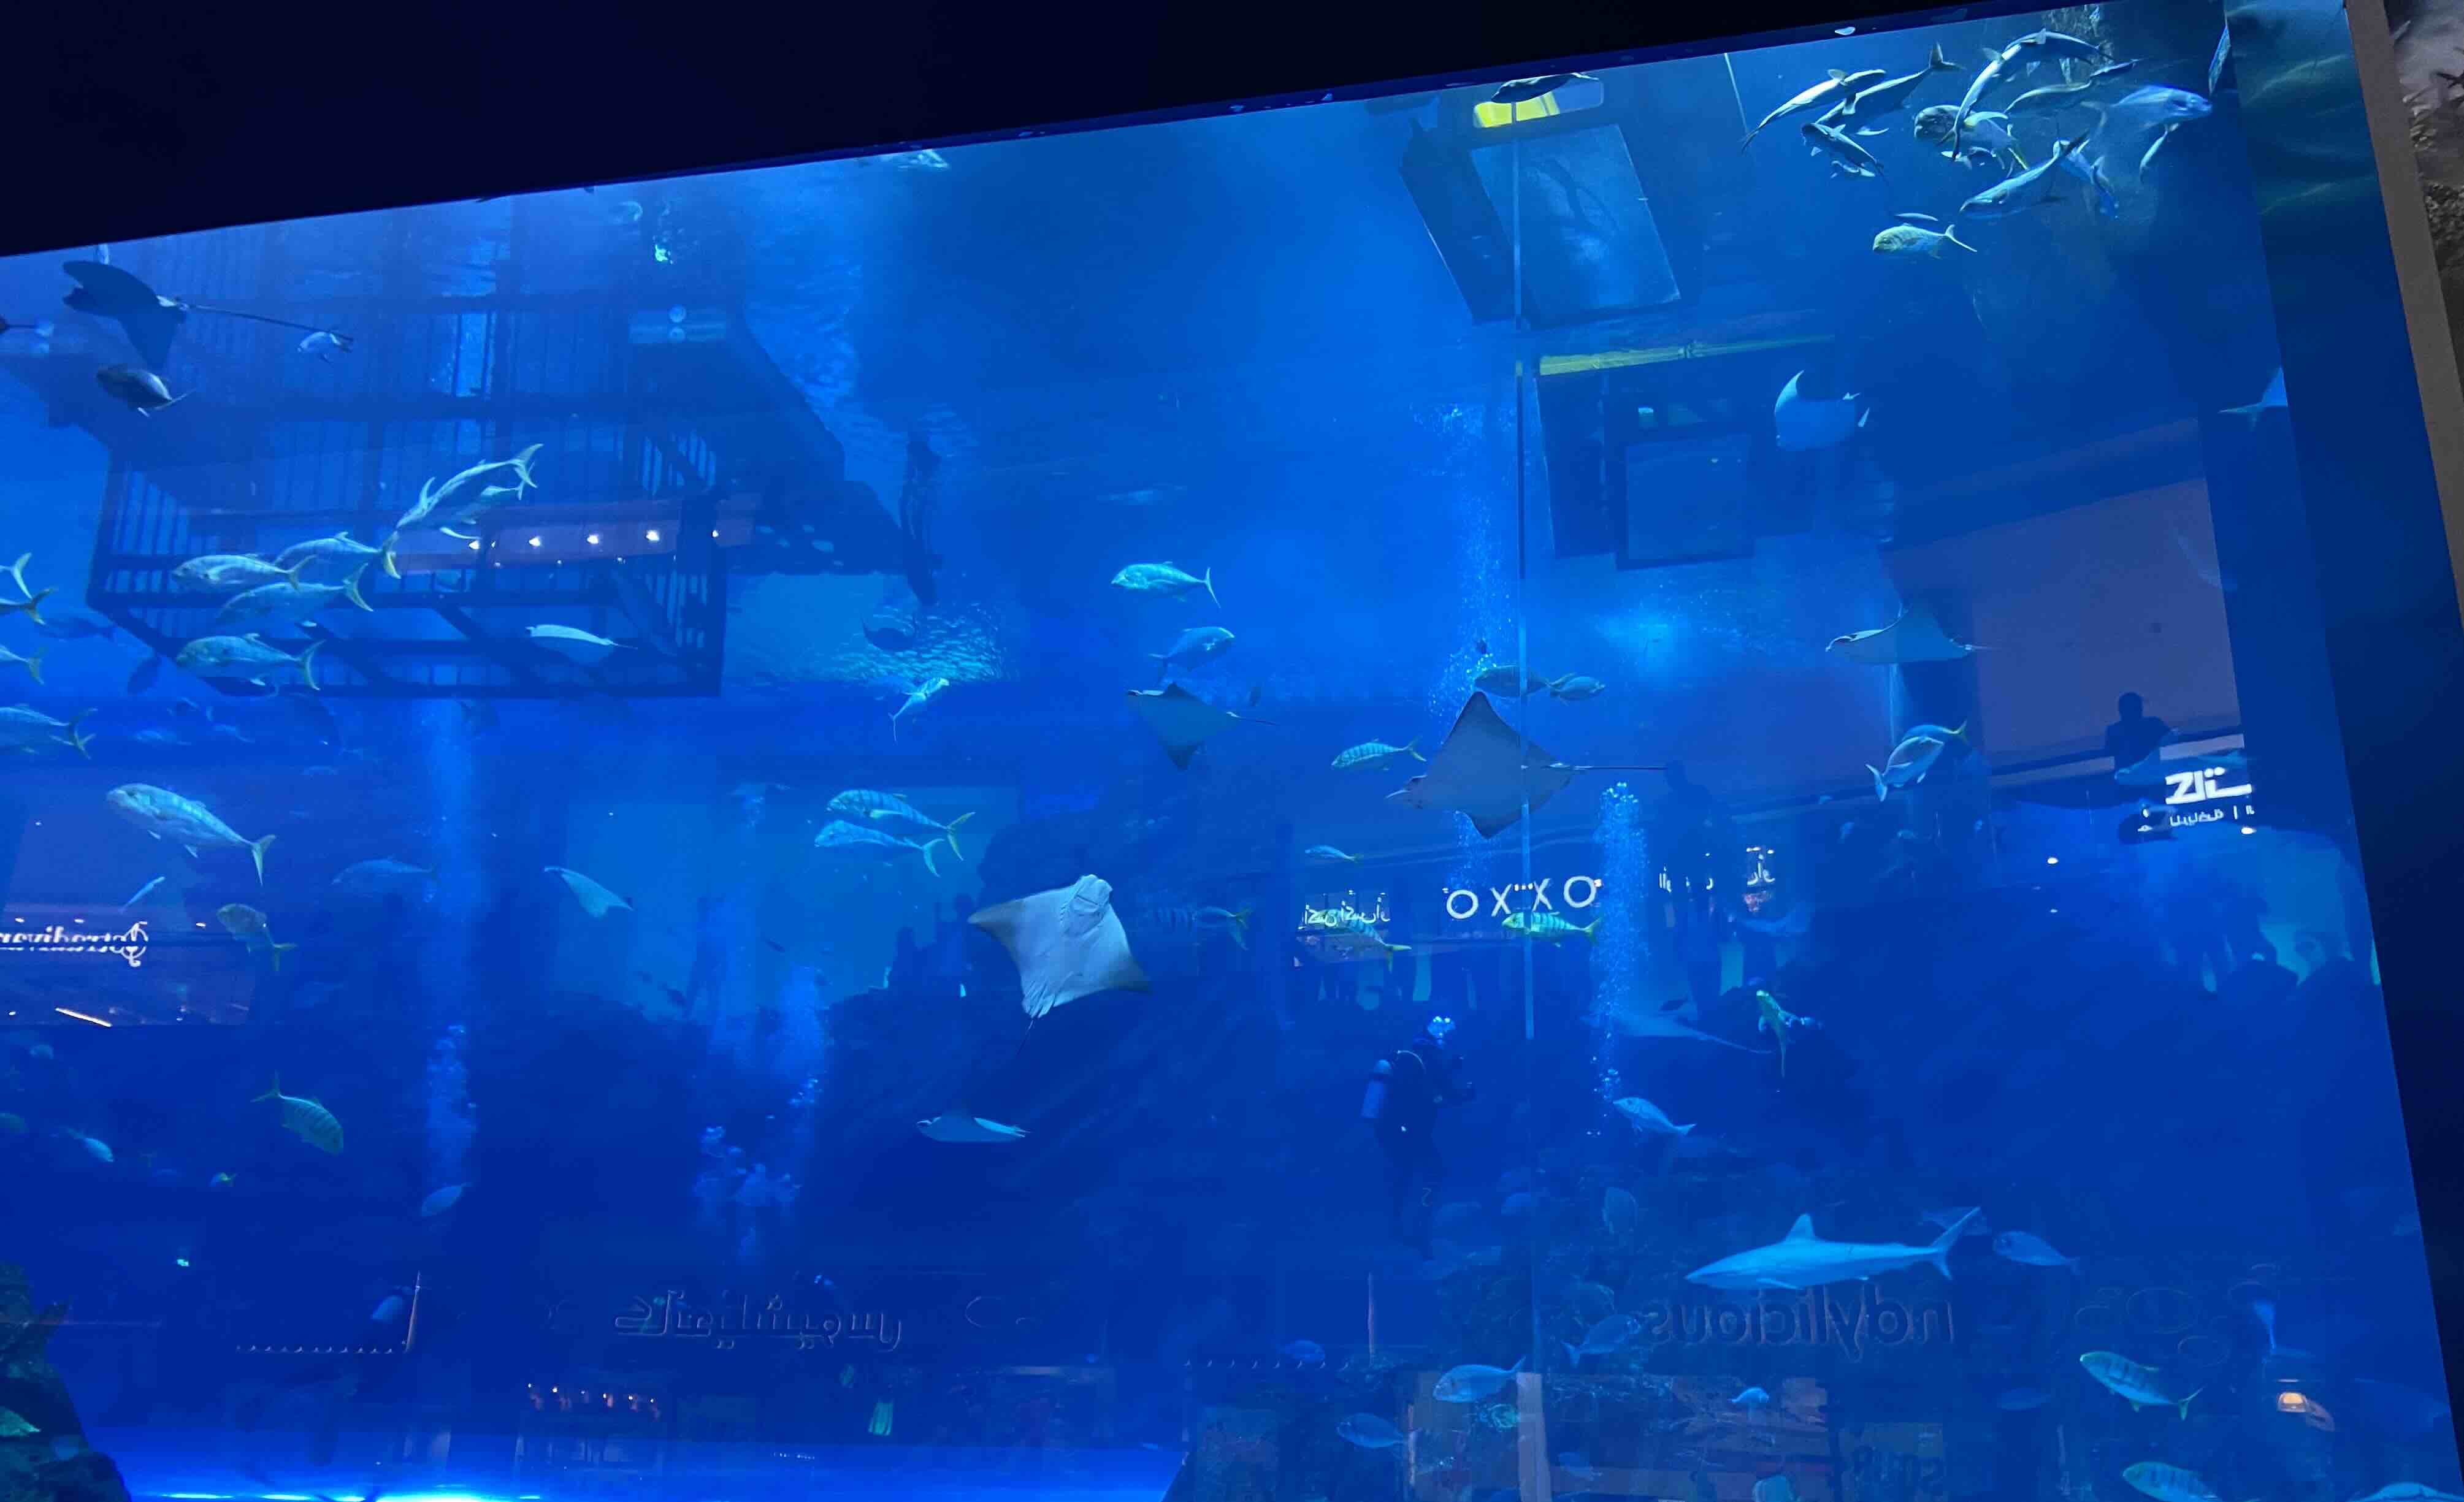 Dubai mall aquarium